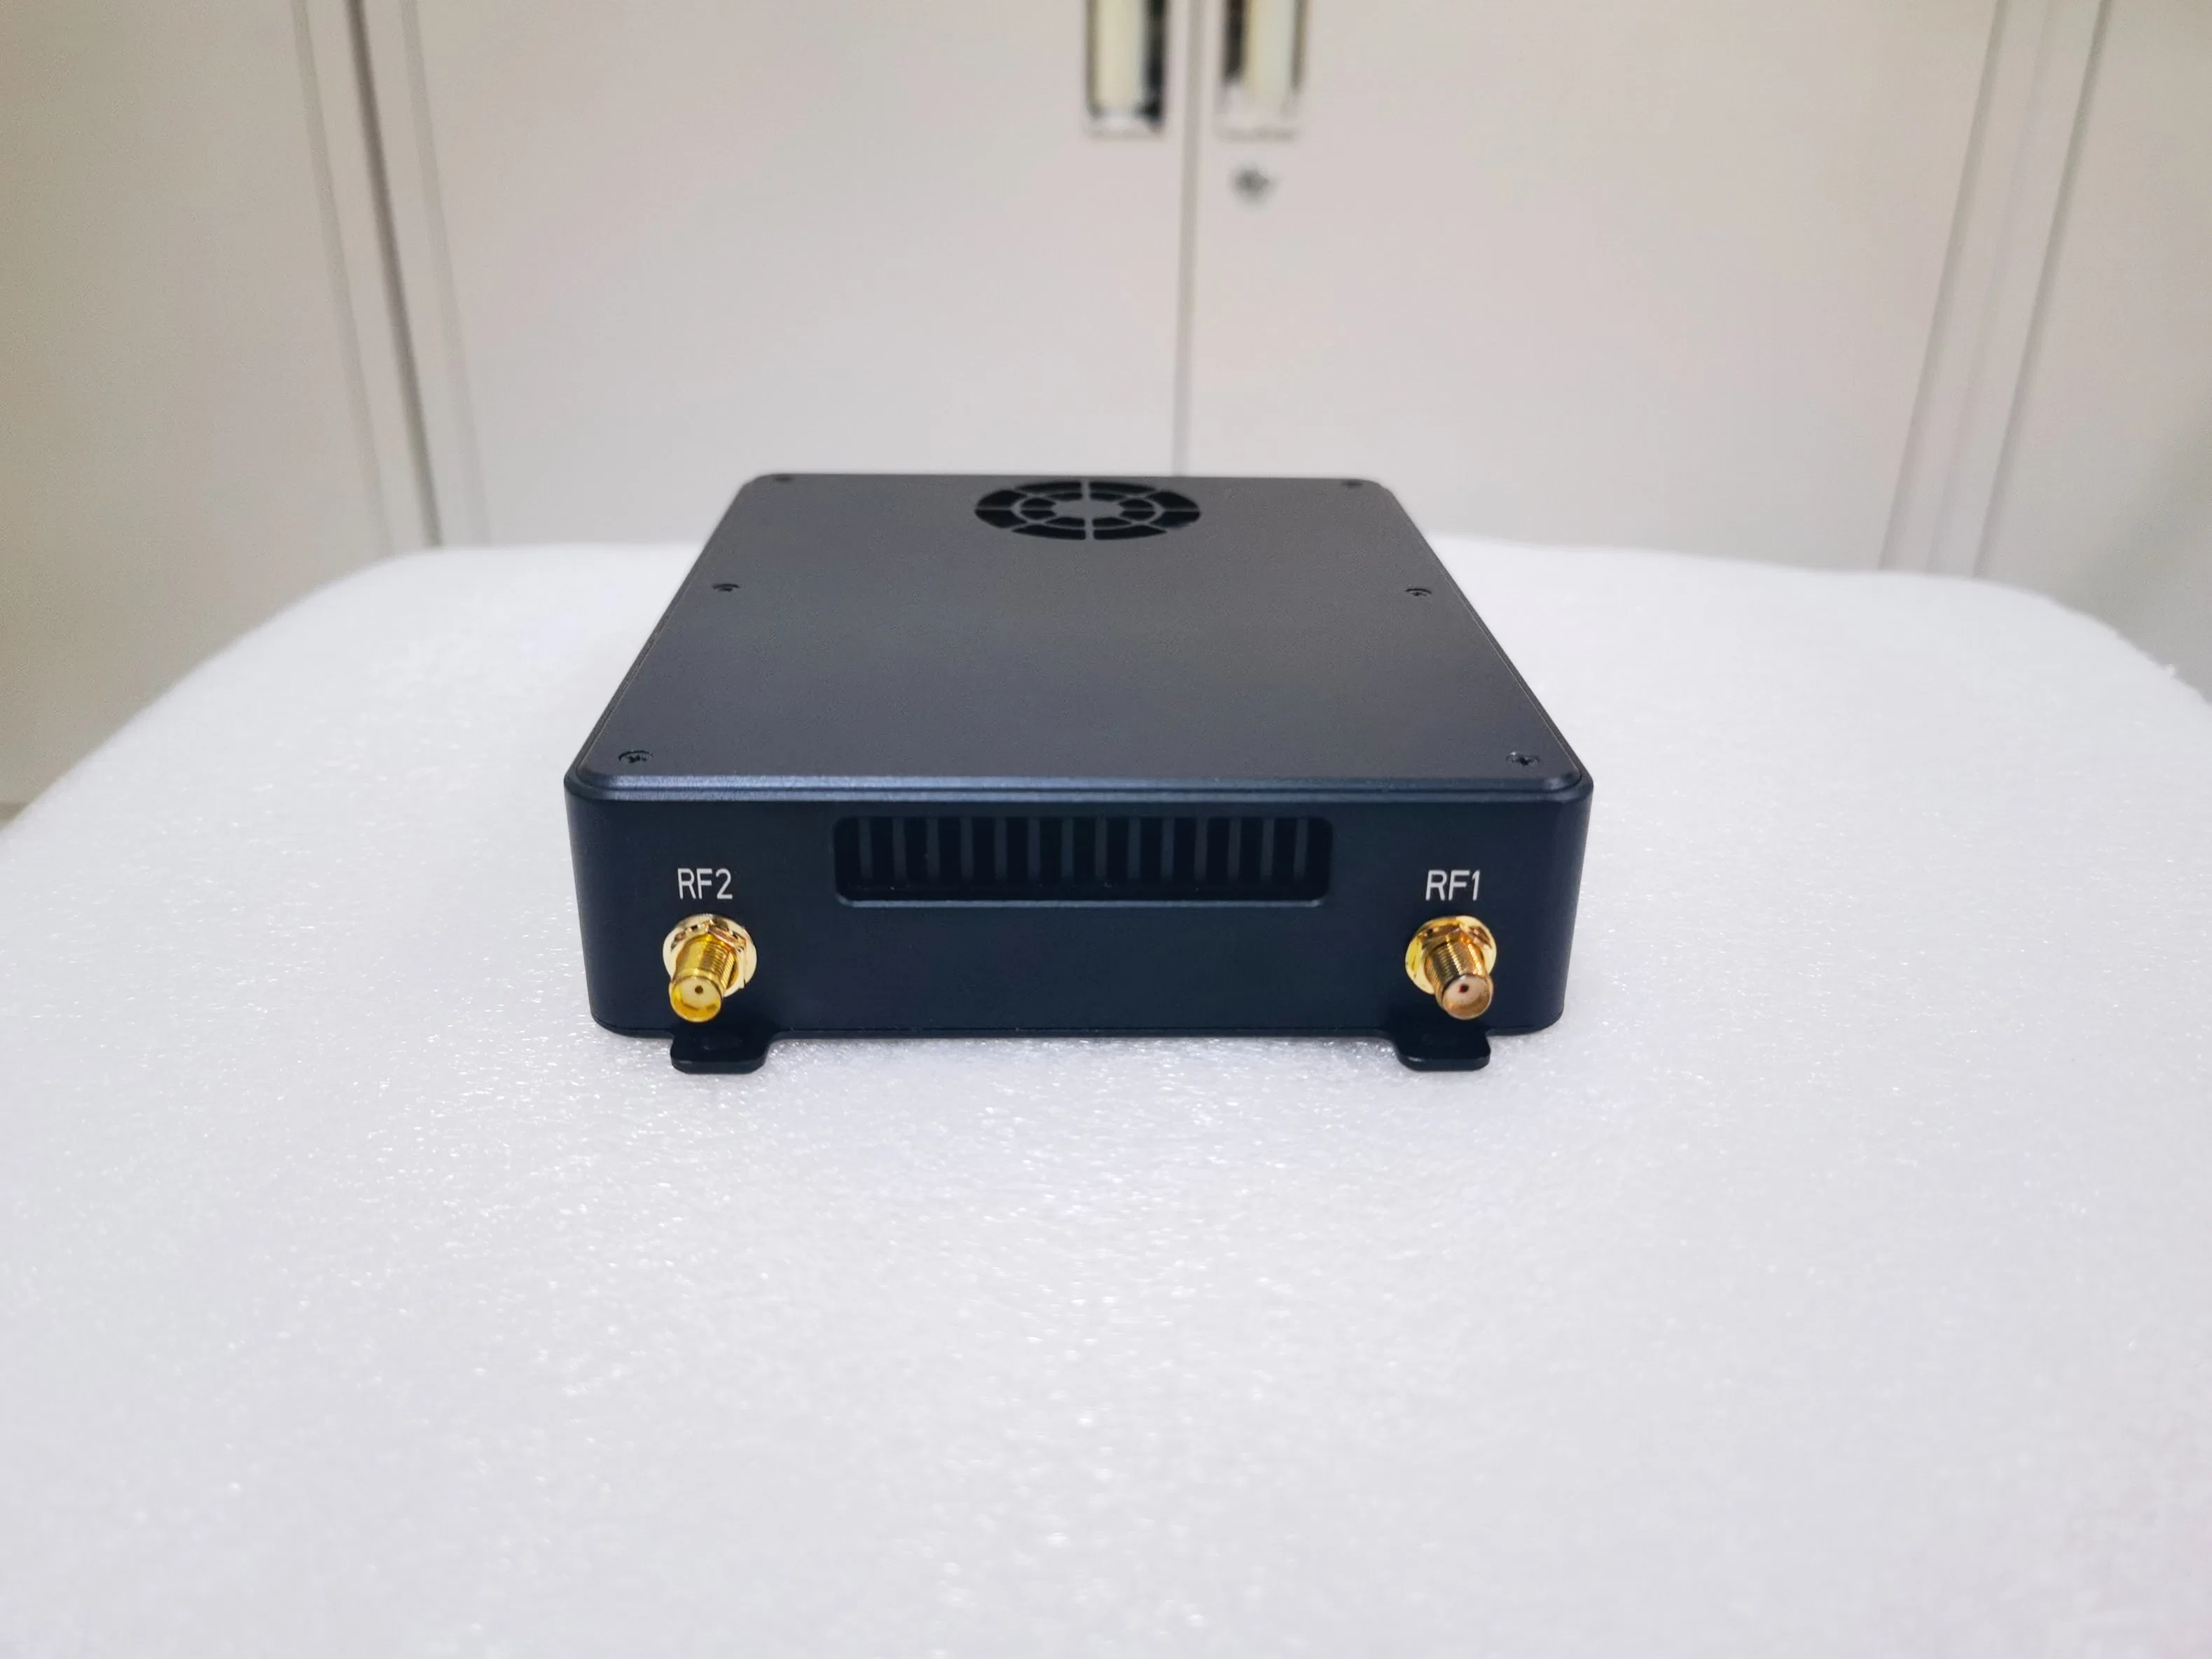 Fernbedienungssystem für Fernkommunikation, RC-Videocontroller